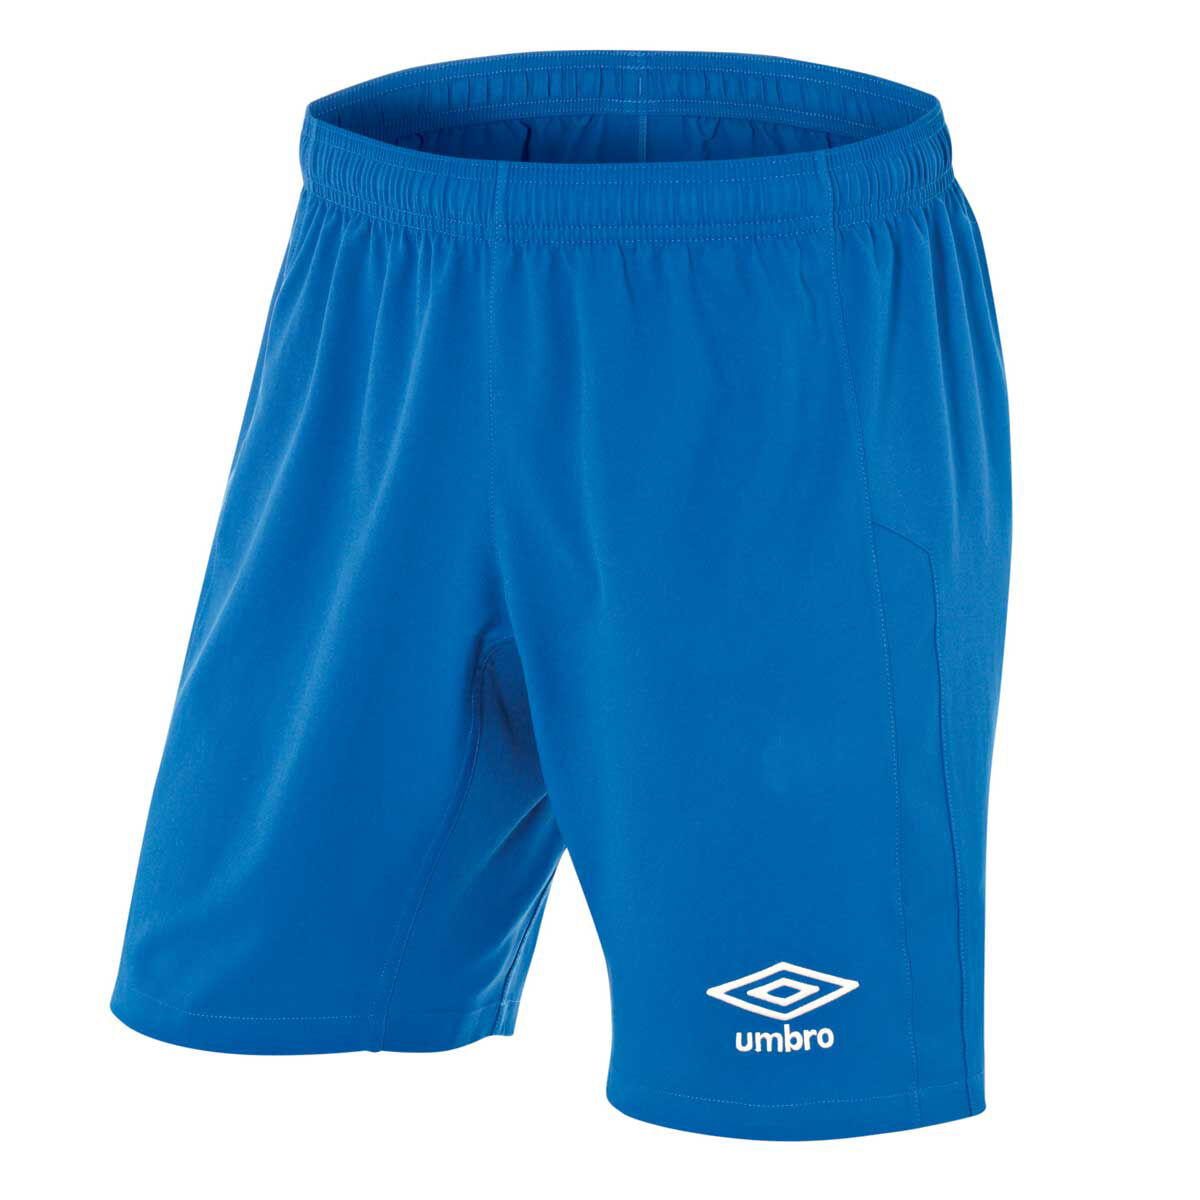 umbro blue shorts